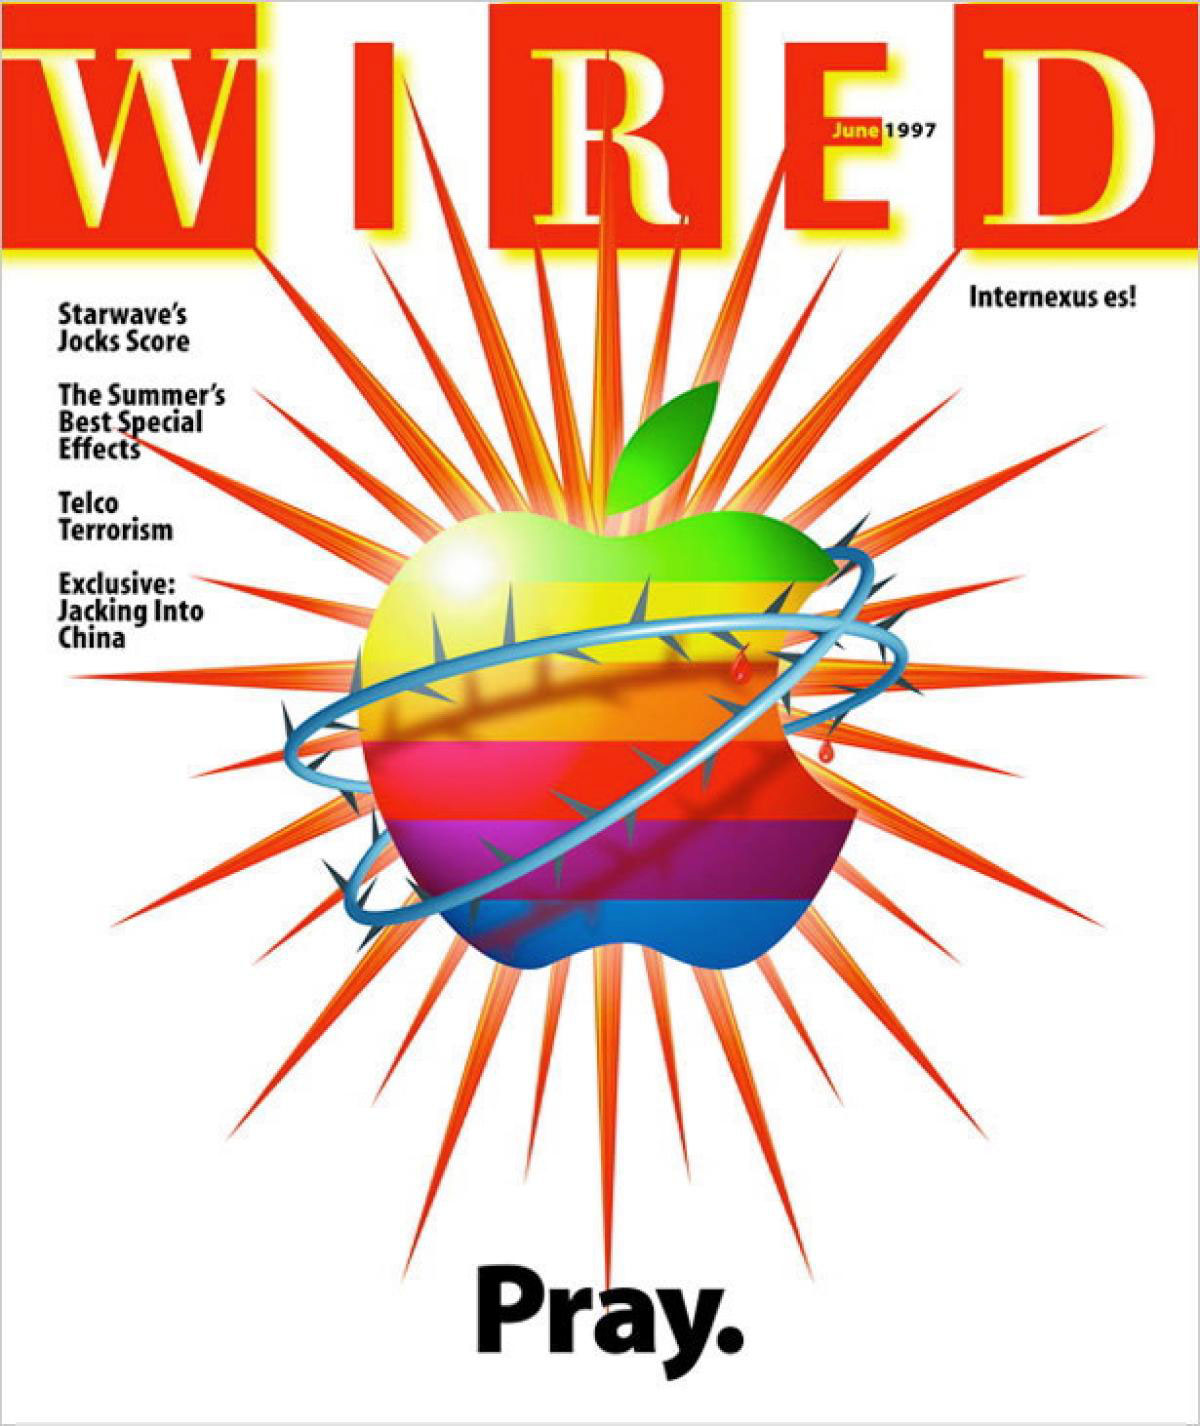 Wired Magazine - MindVox